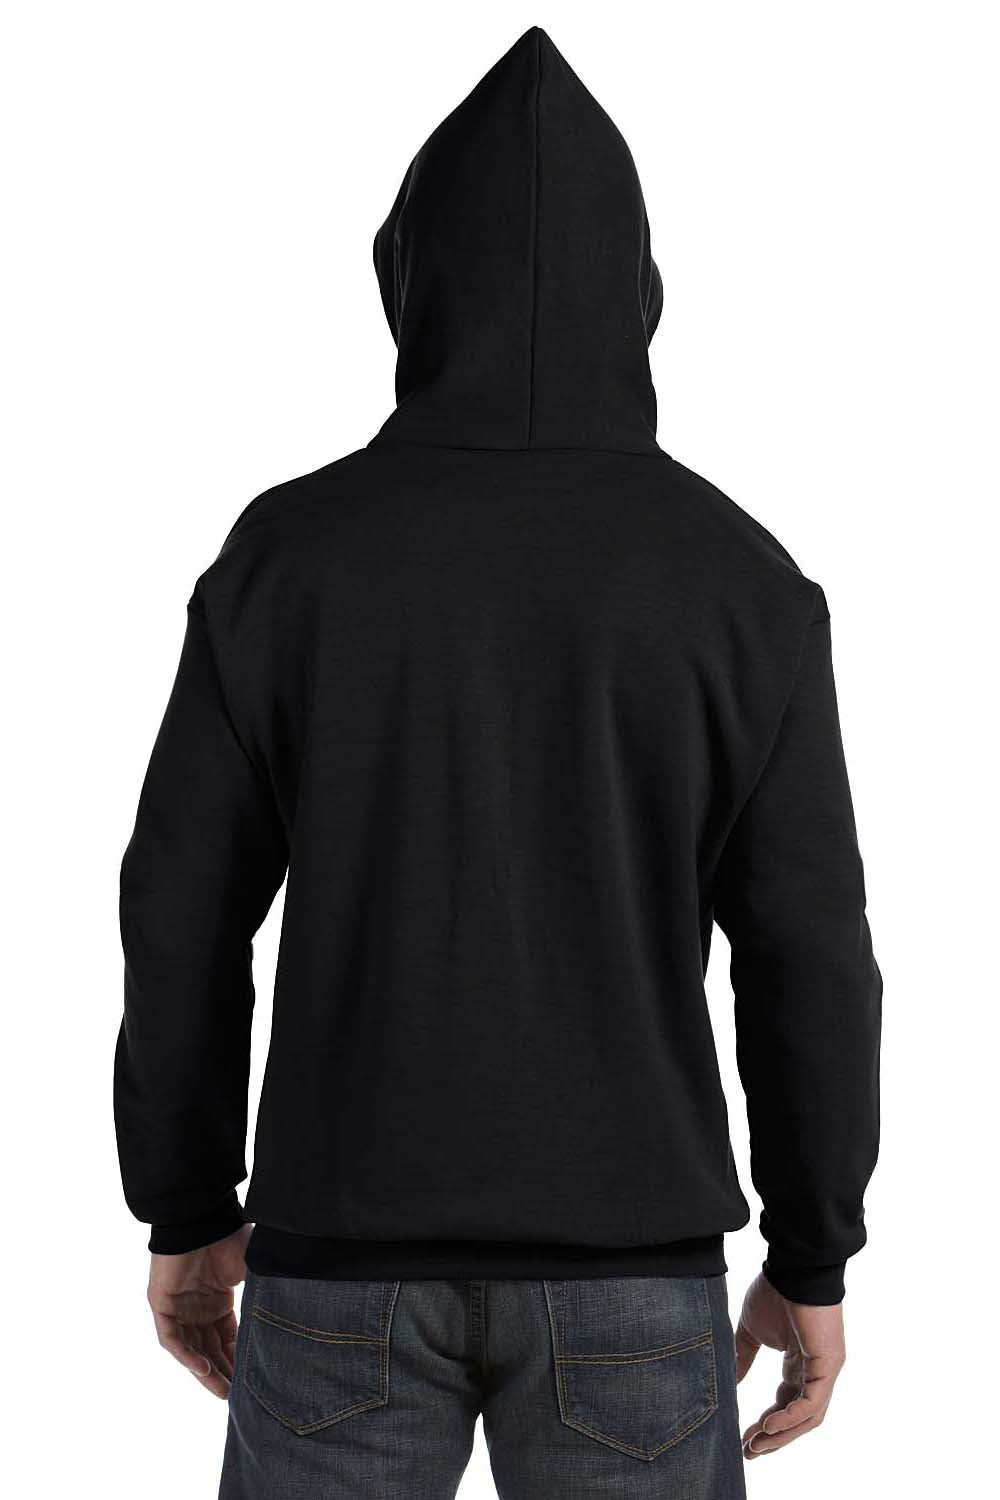 Hanes P170 Mens EcoSmart Print Pro XP Hooded Sweatshirt Hoodie Black Back